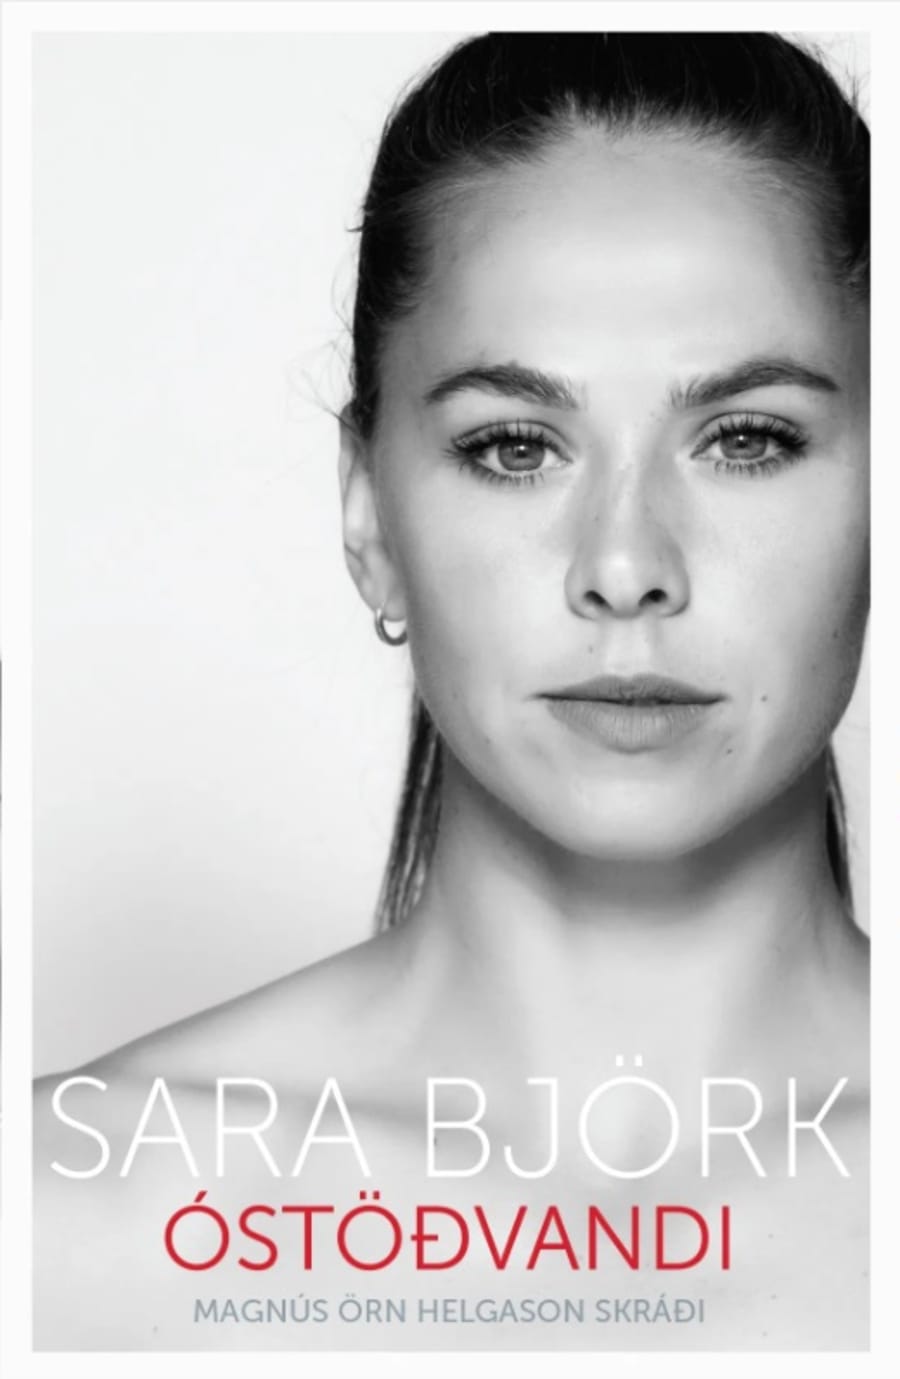 Sara Björk: Óstöðvandi